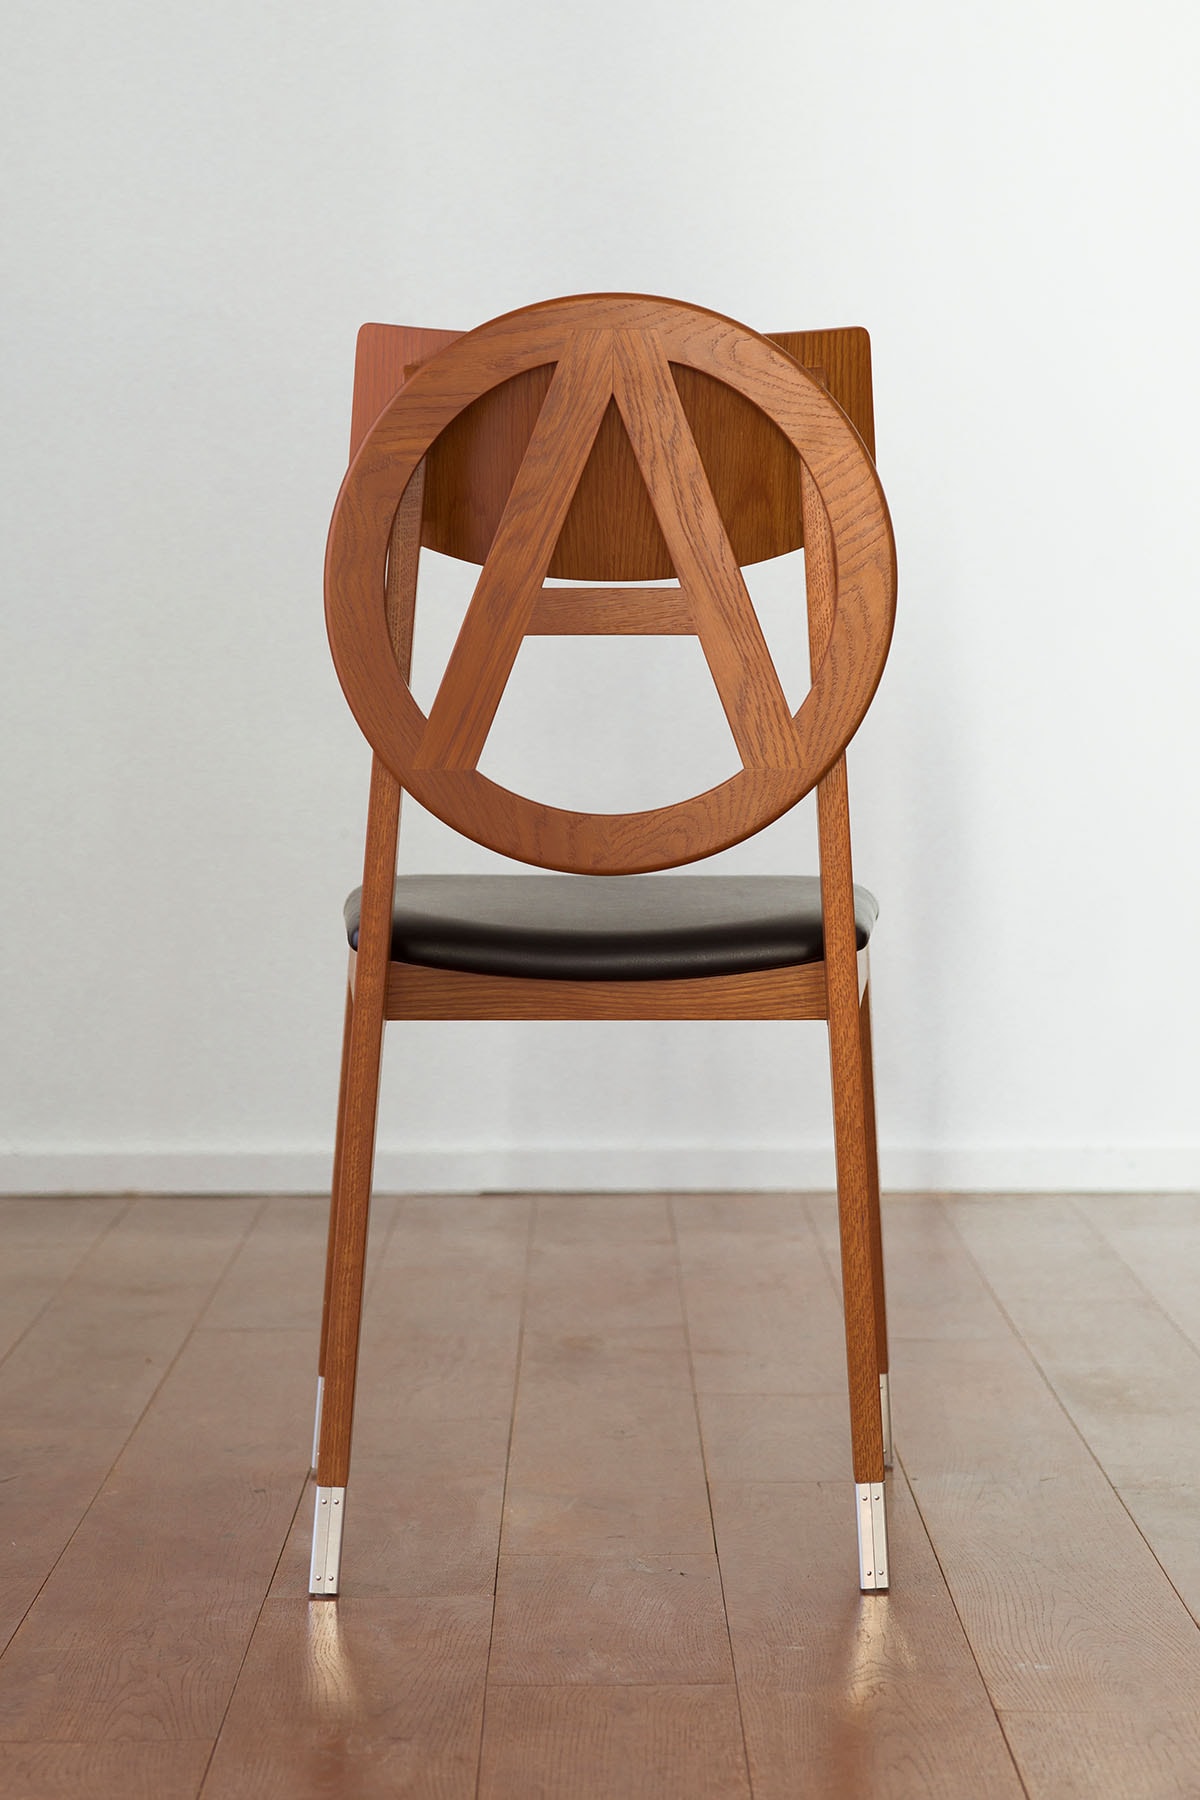 アンダーカバーから天童木工製作のアナーキーチェアが発売 UNDERCOVER x TENDO MOKKO collab Anarchy Chair release info